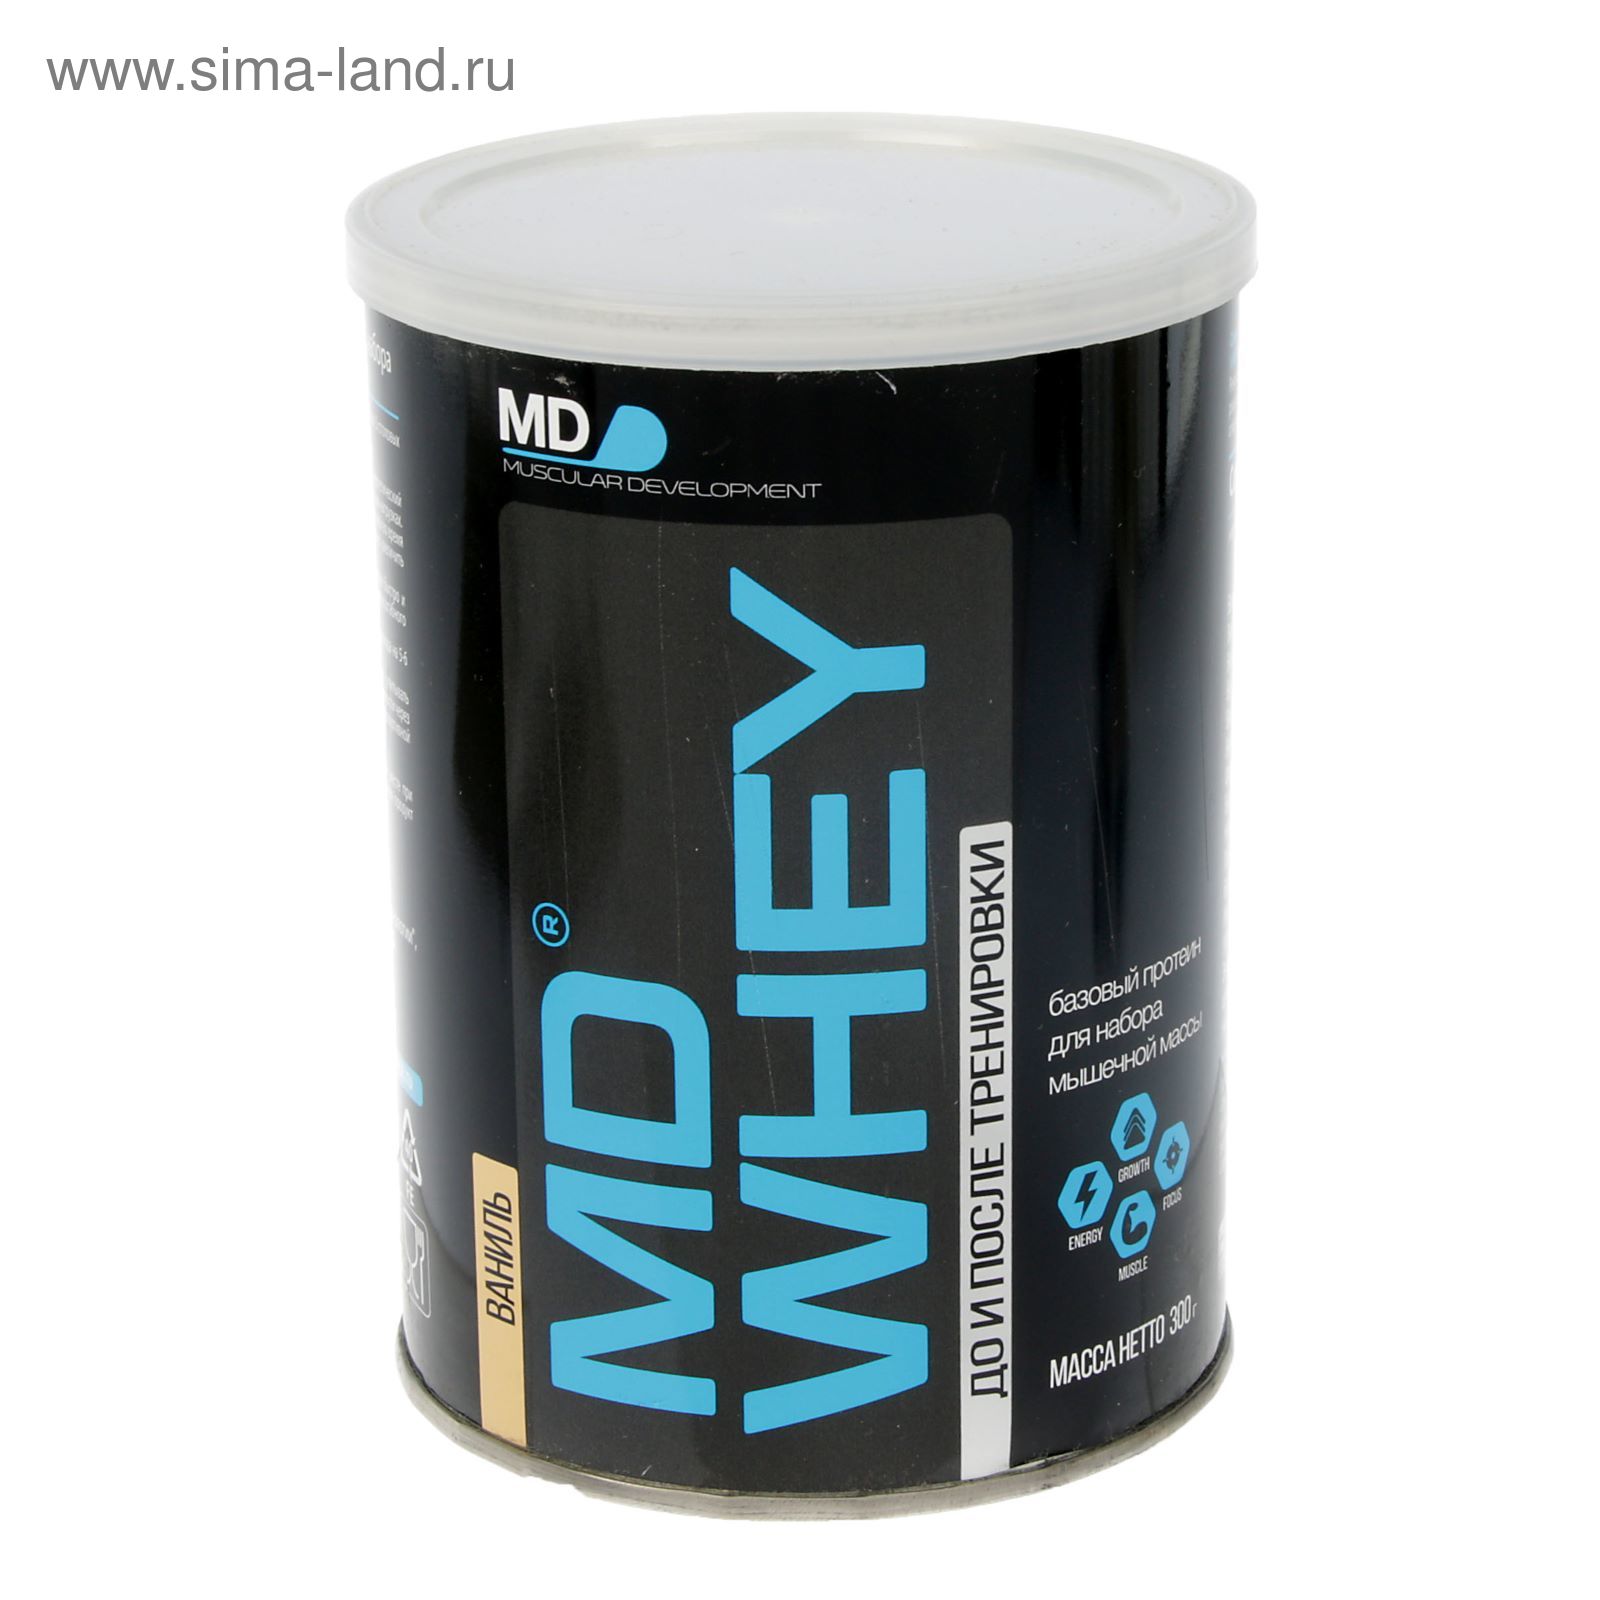 Протеин MD Whey 60%  ультрафильтрационный концентрат  сывороточного белка  300 г. ваниль